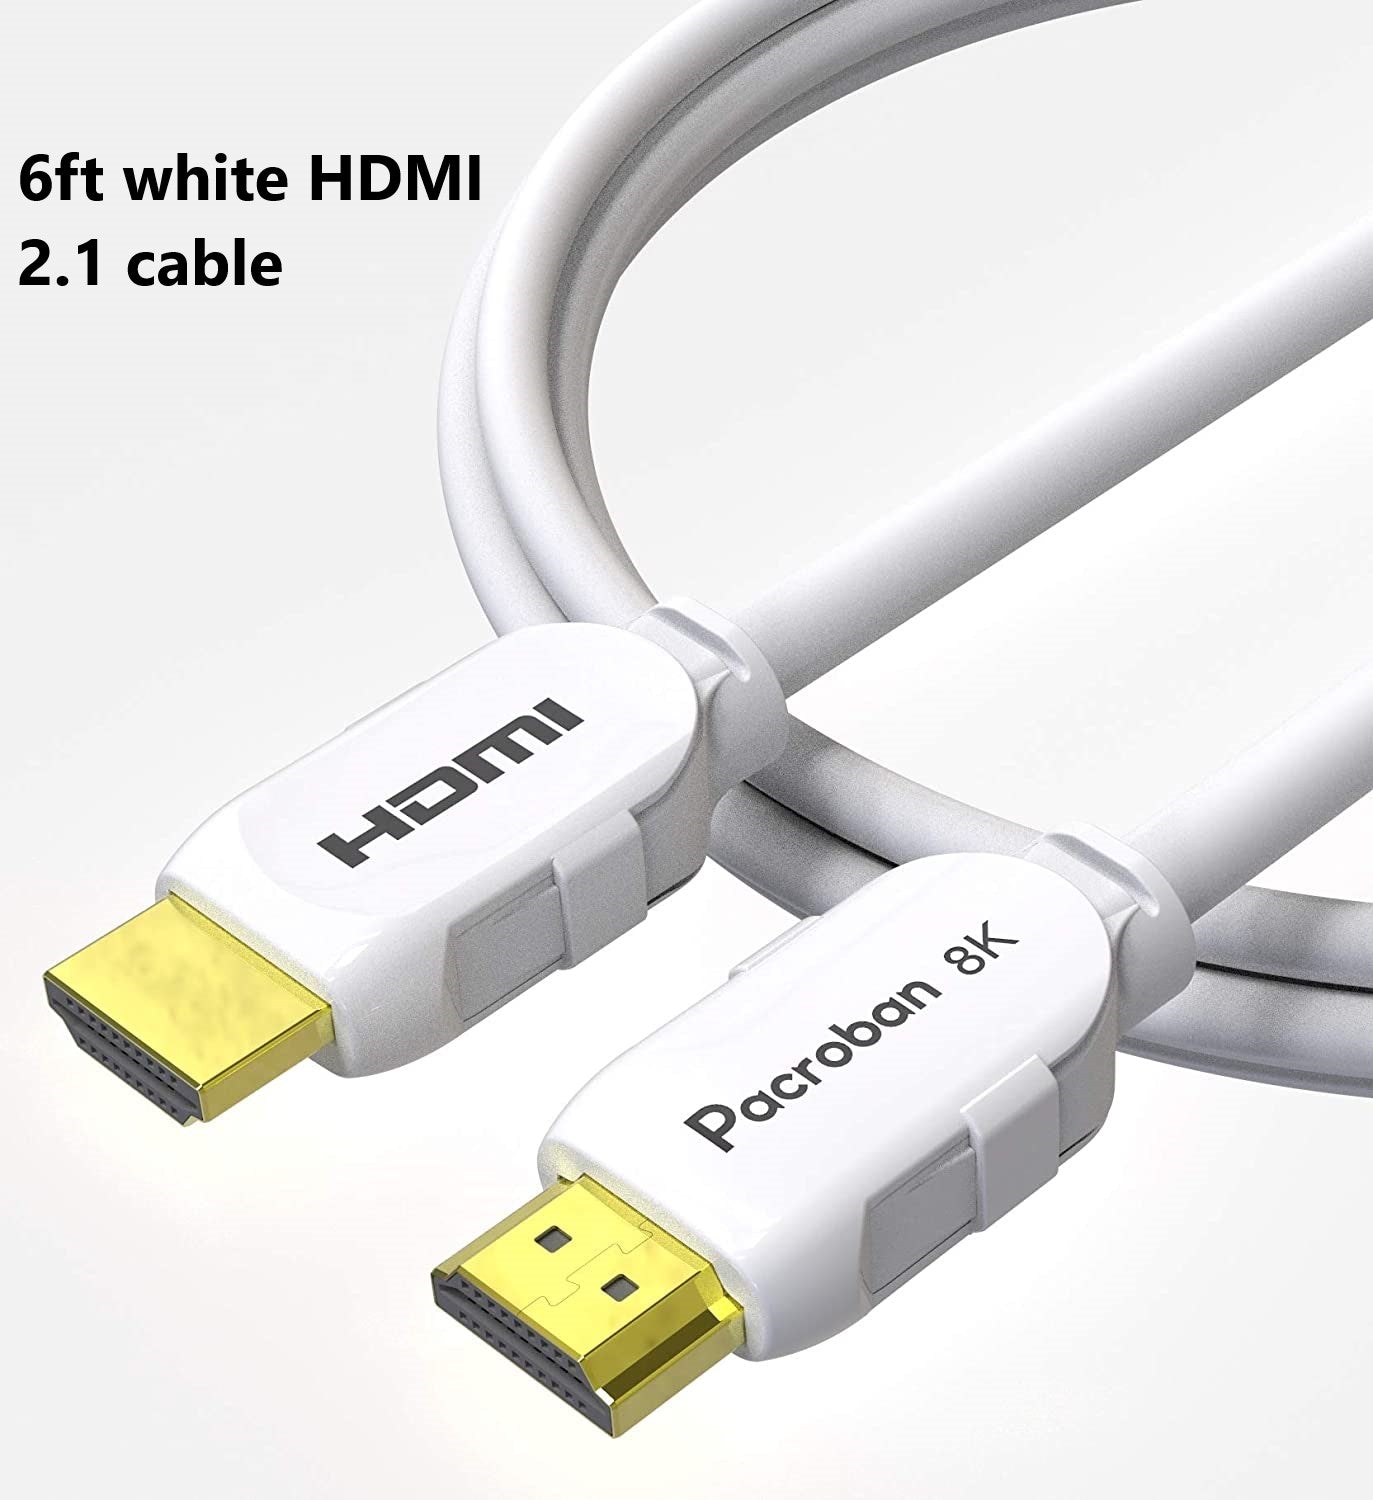 Open Box - Slim HDMI, Fiber optic, HDMI 2.1 Cables in One Box